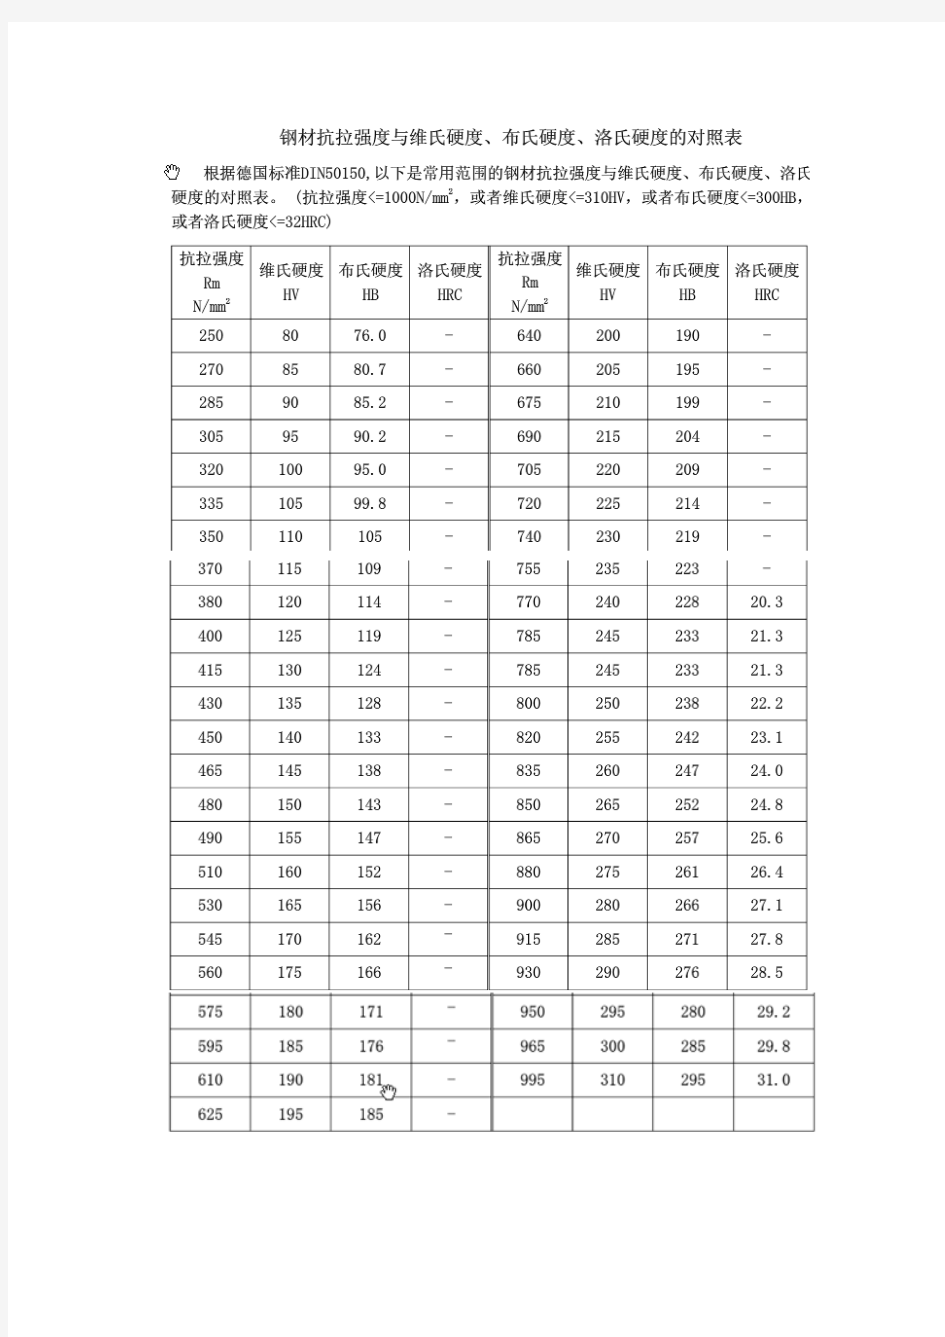 钢材抗拉强度与维氏硬度、布氏硬度、洛氏硬度的对照表